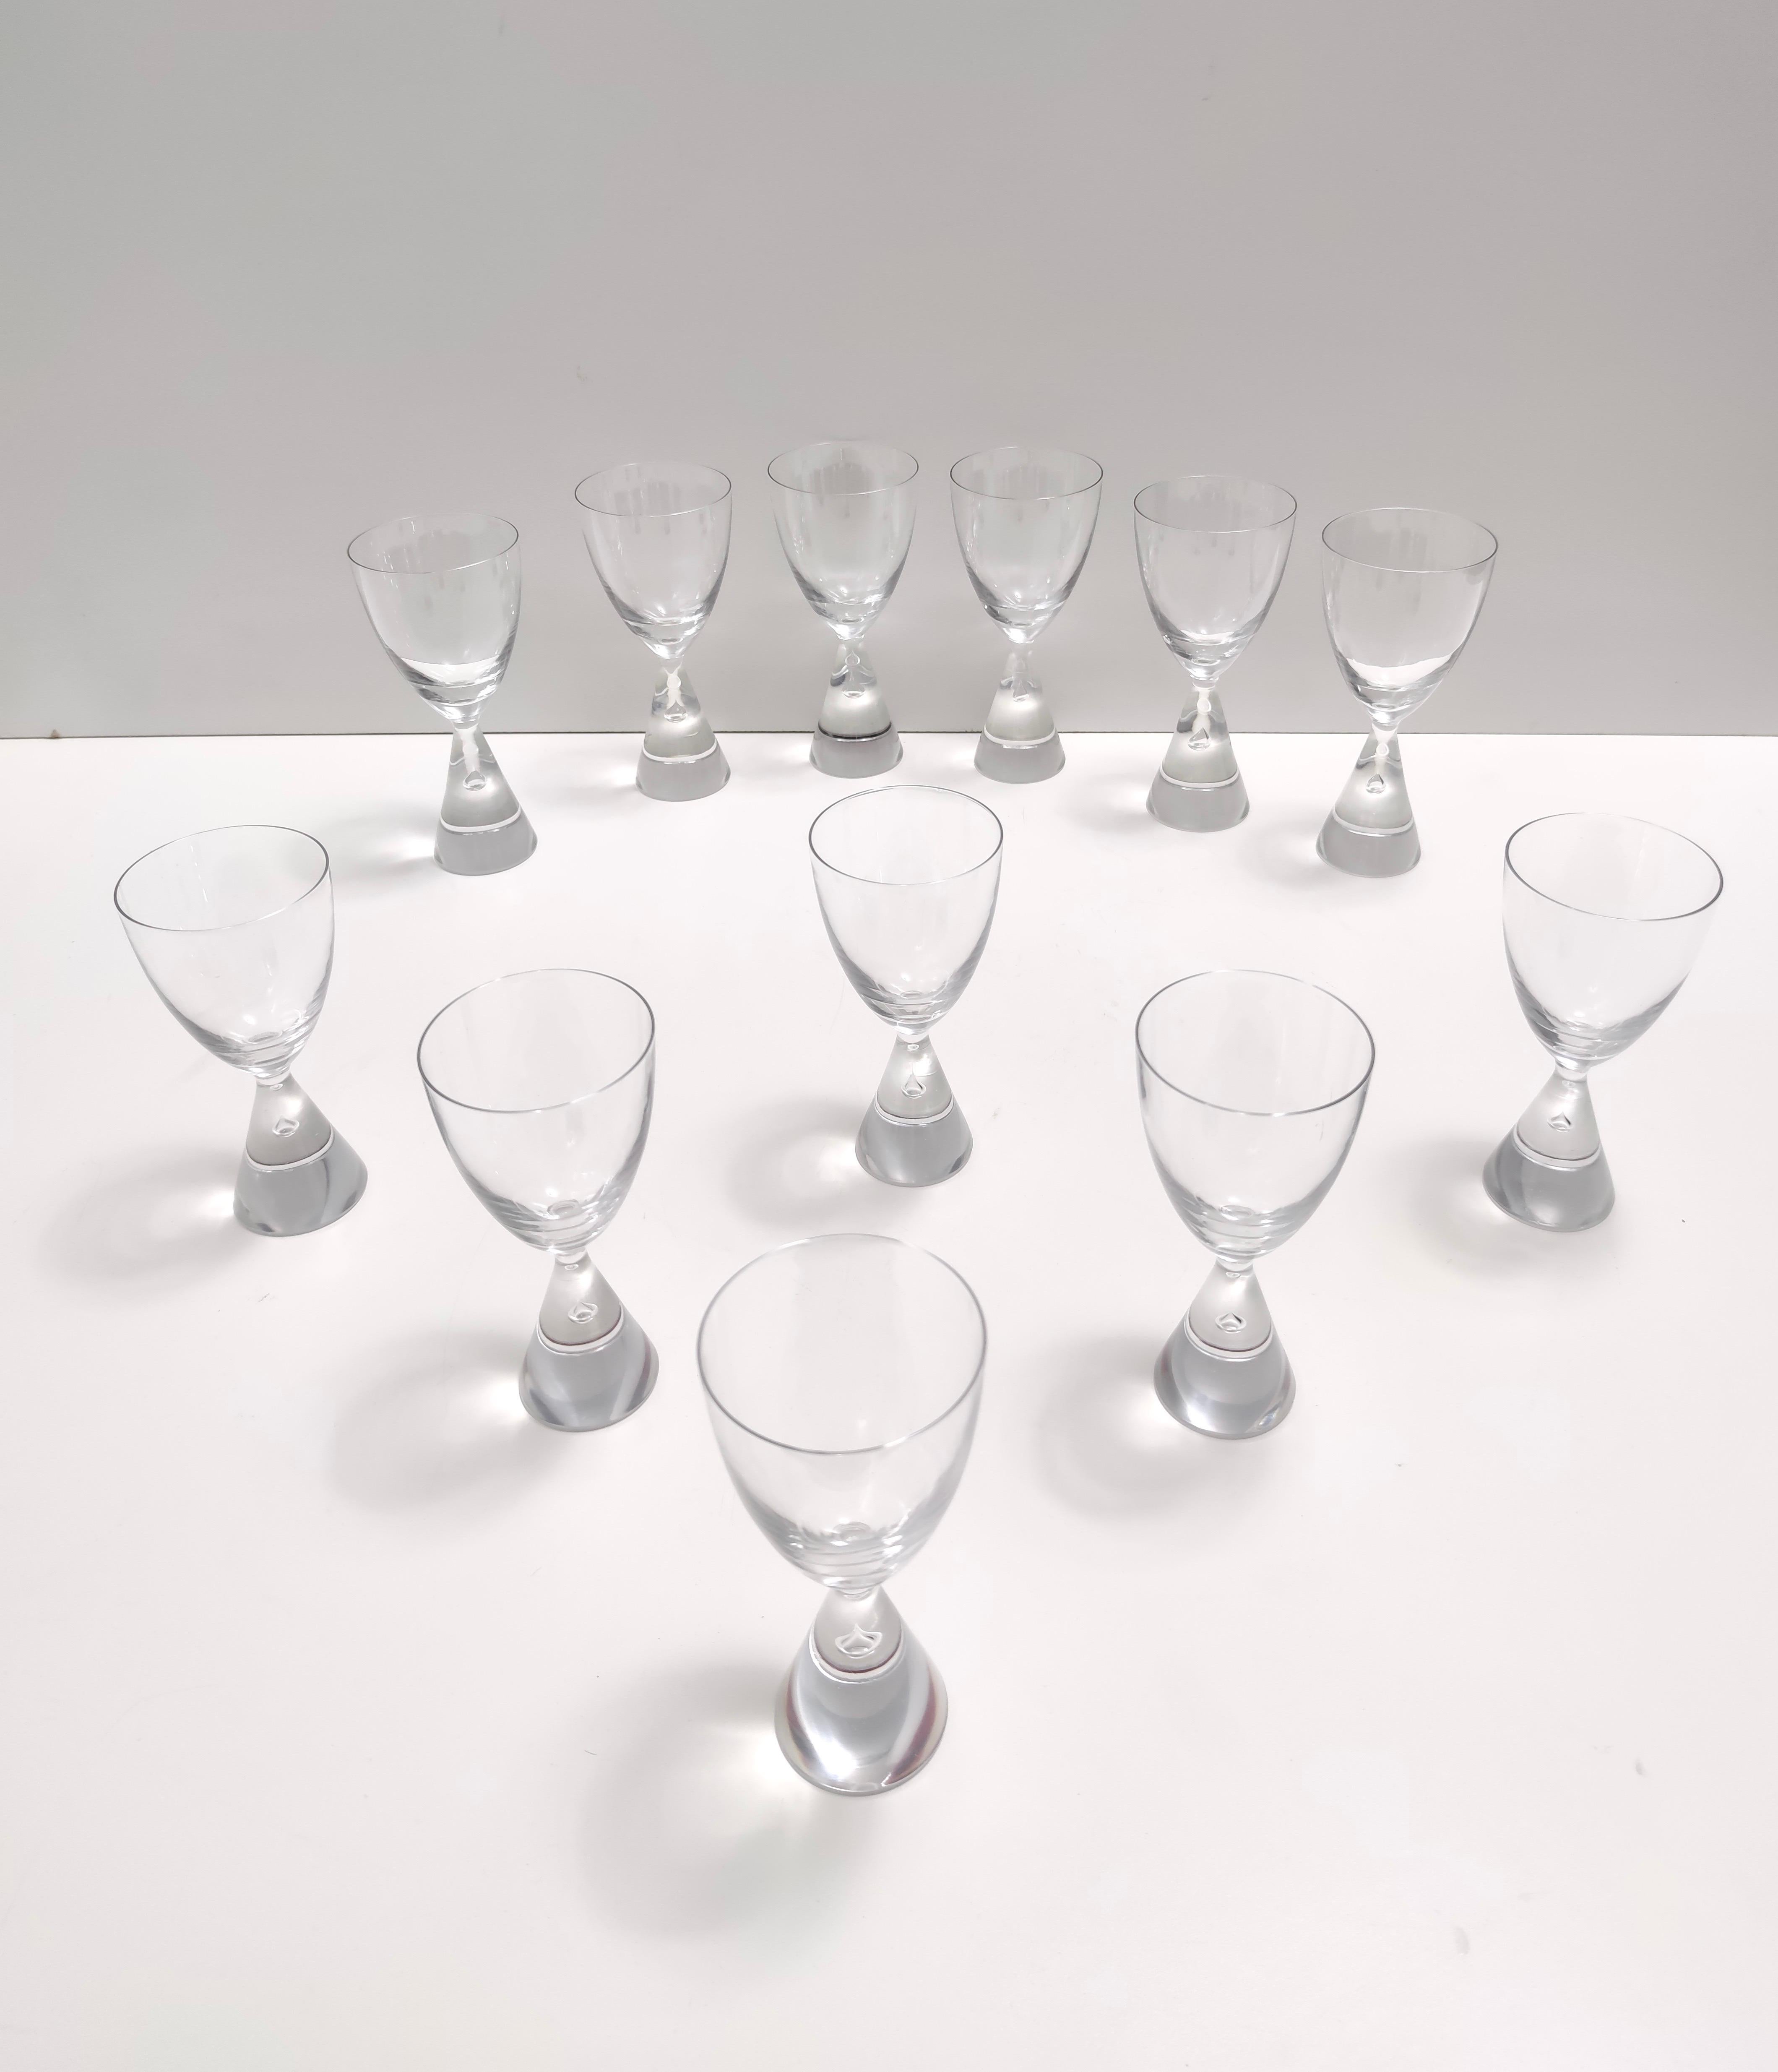 Danish Set of Twelve Crystal Drinking Glasses by Bent Ole Severin for Holmegaard, 1958